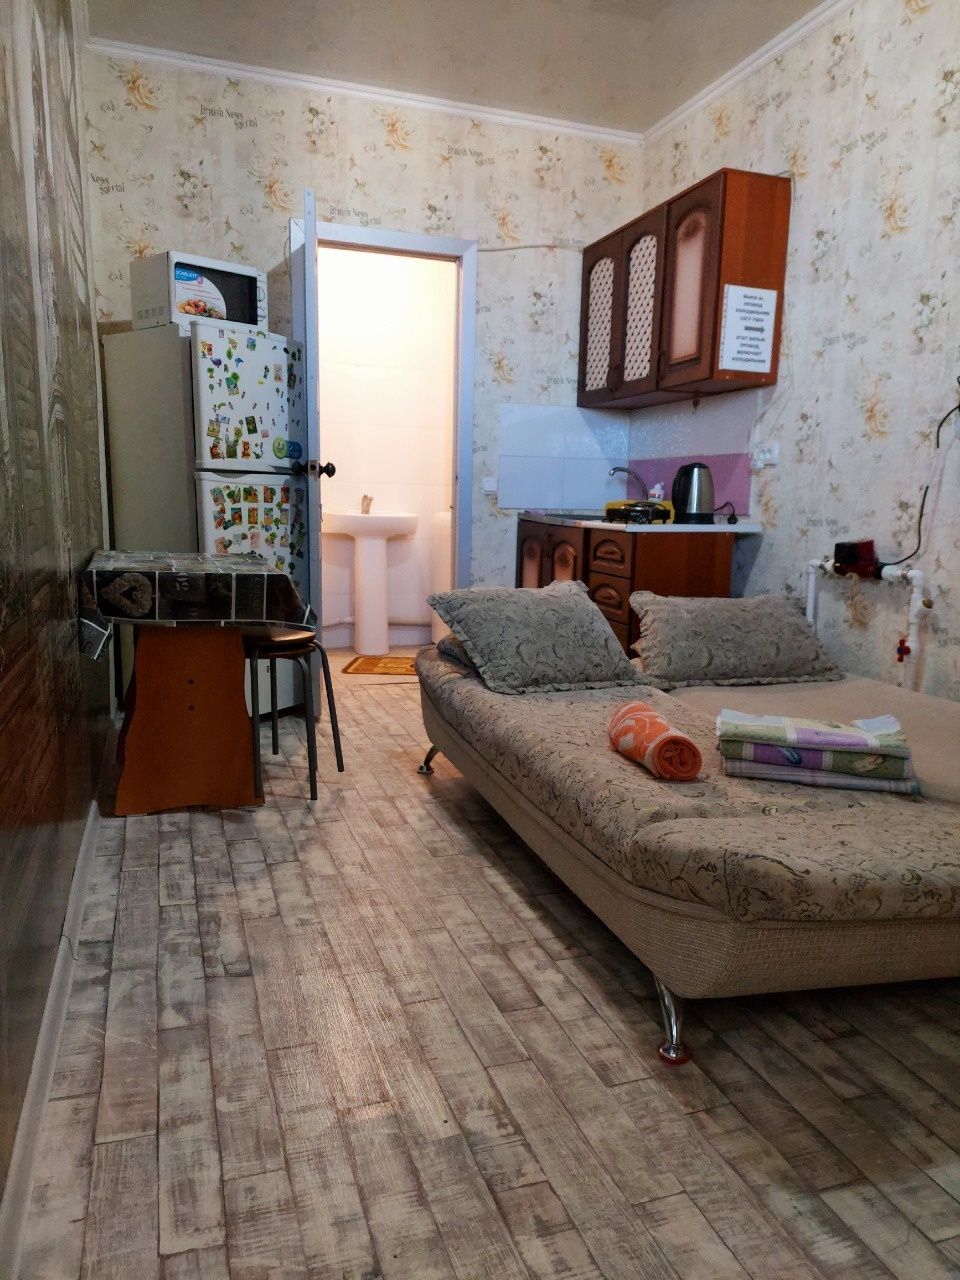 Сдам квартиру очень маленькую 15м² в Актобе Ажары 11 мкр с wi-fi